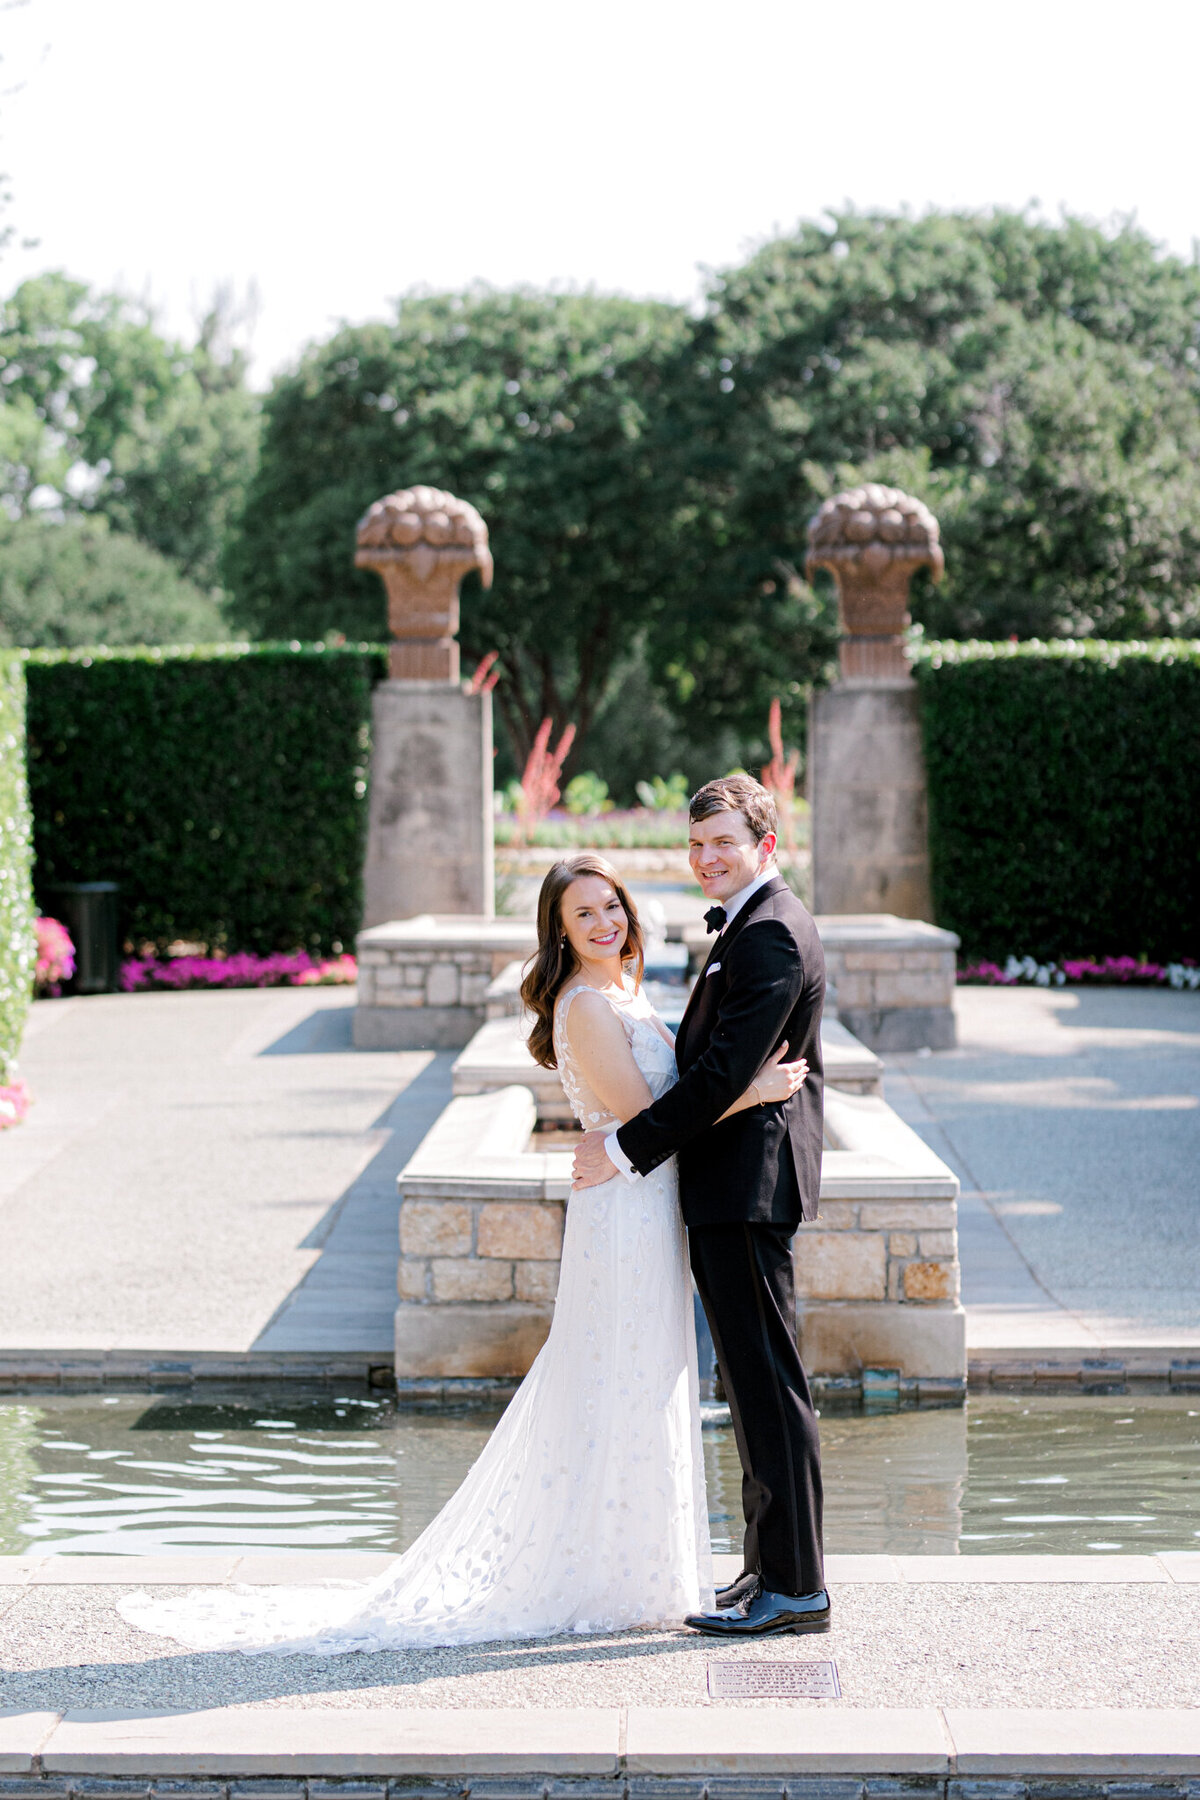 Gena & Matt's Wedding at the Dallas Arboretum | Dallas Wedding Photographer | Sami Kathryn Photography-4